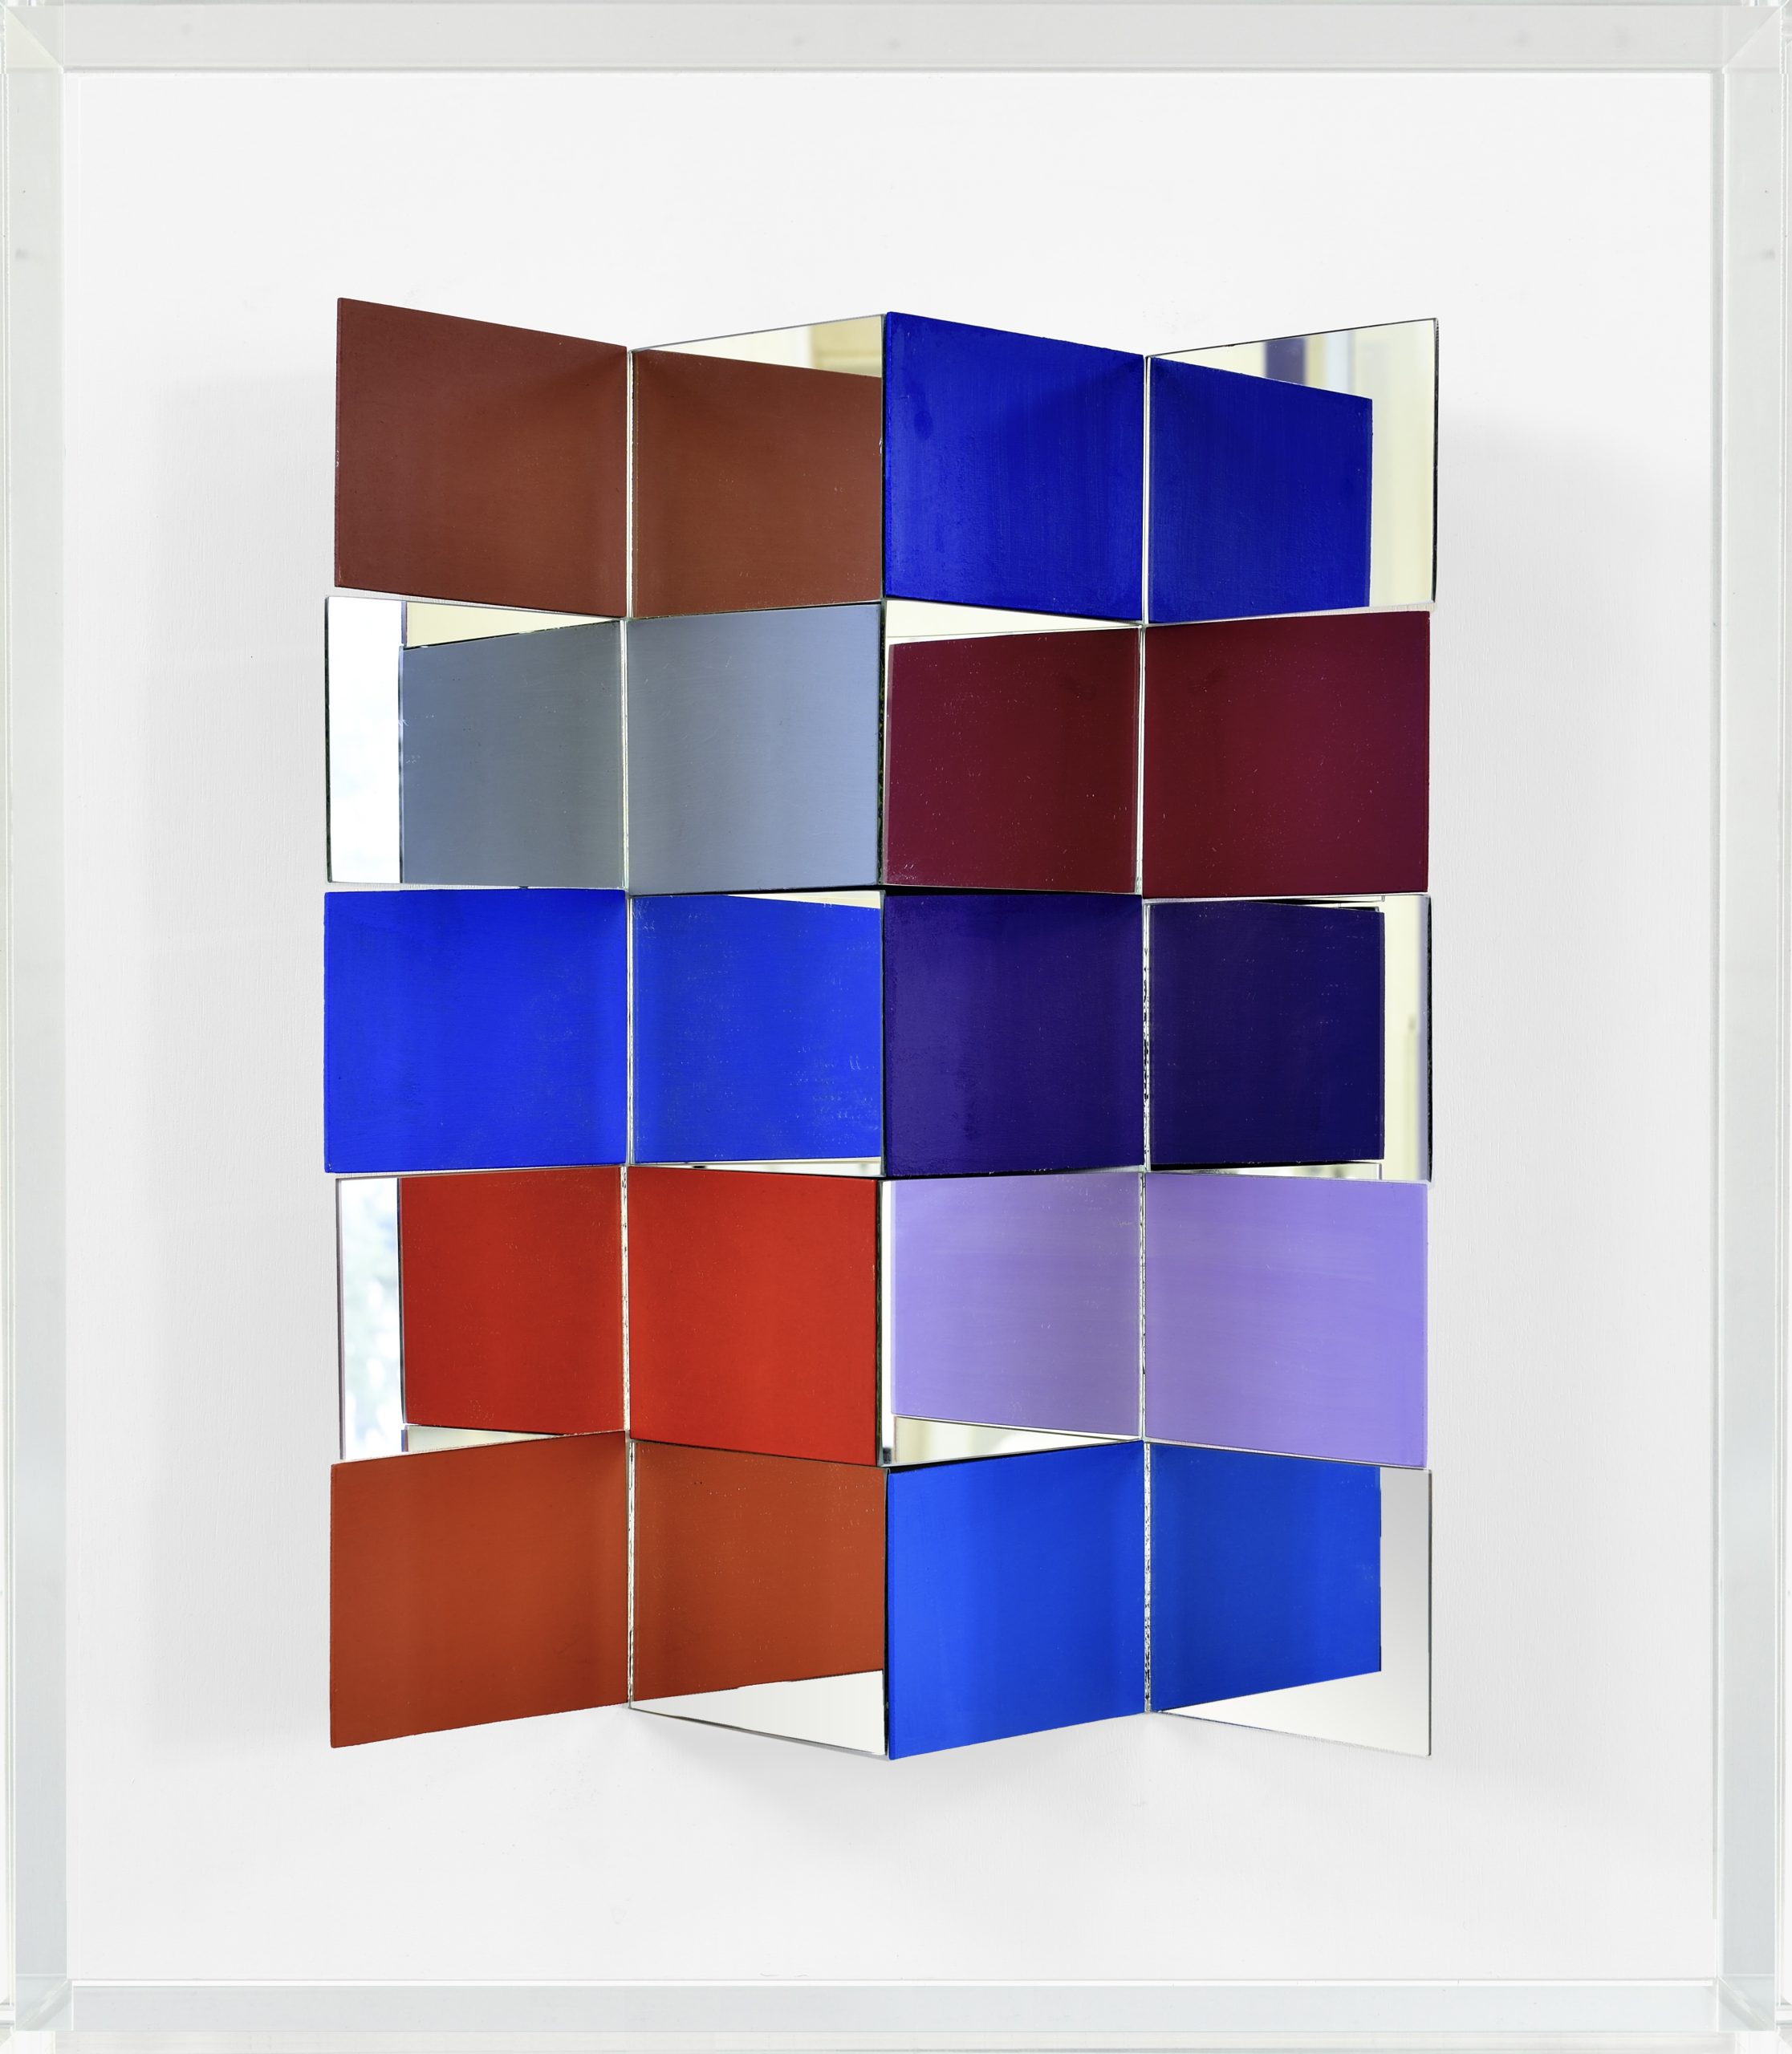 Christian Megert, Untitled, 2020, legno, specchio, acrilico e plexiglass, 71x61x21 cm